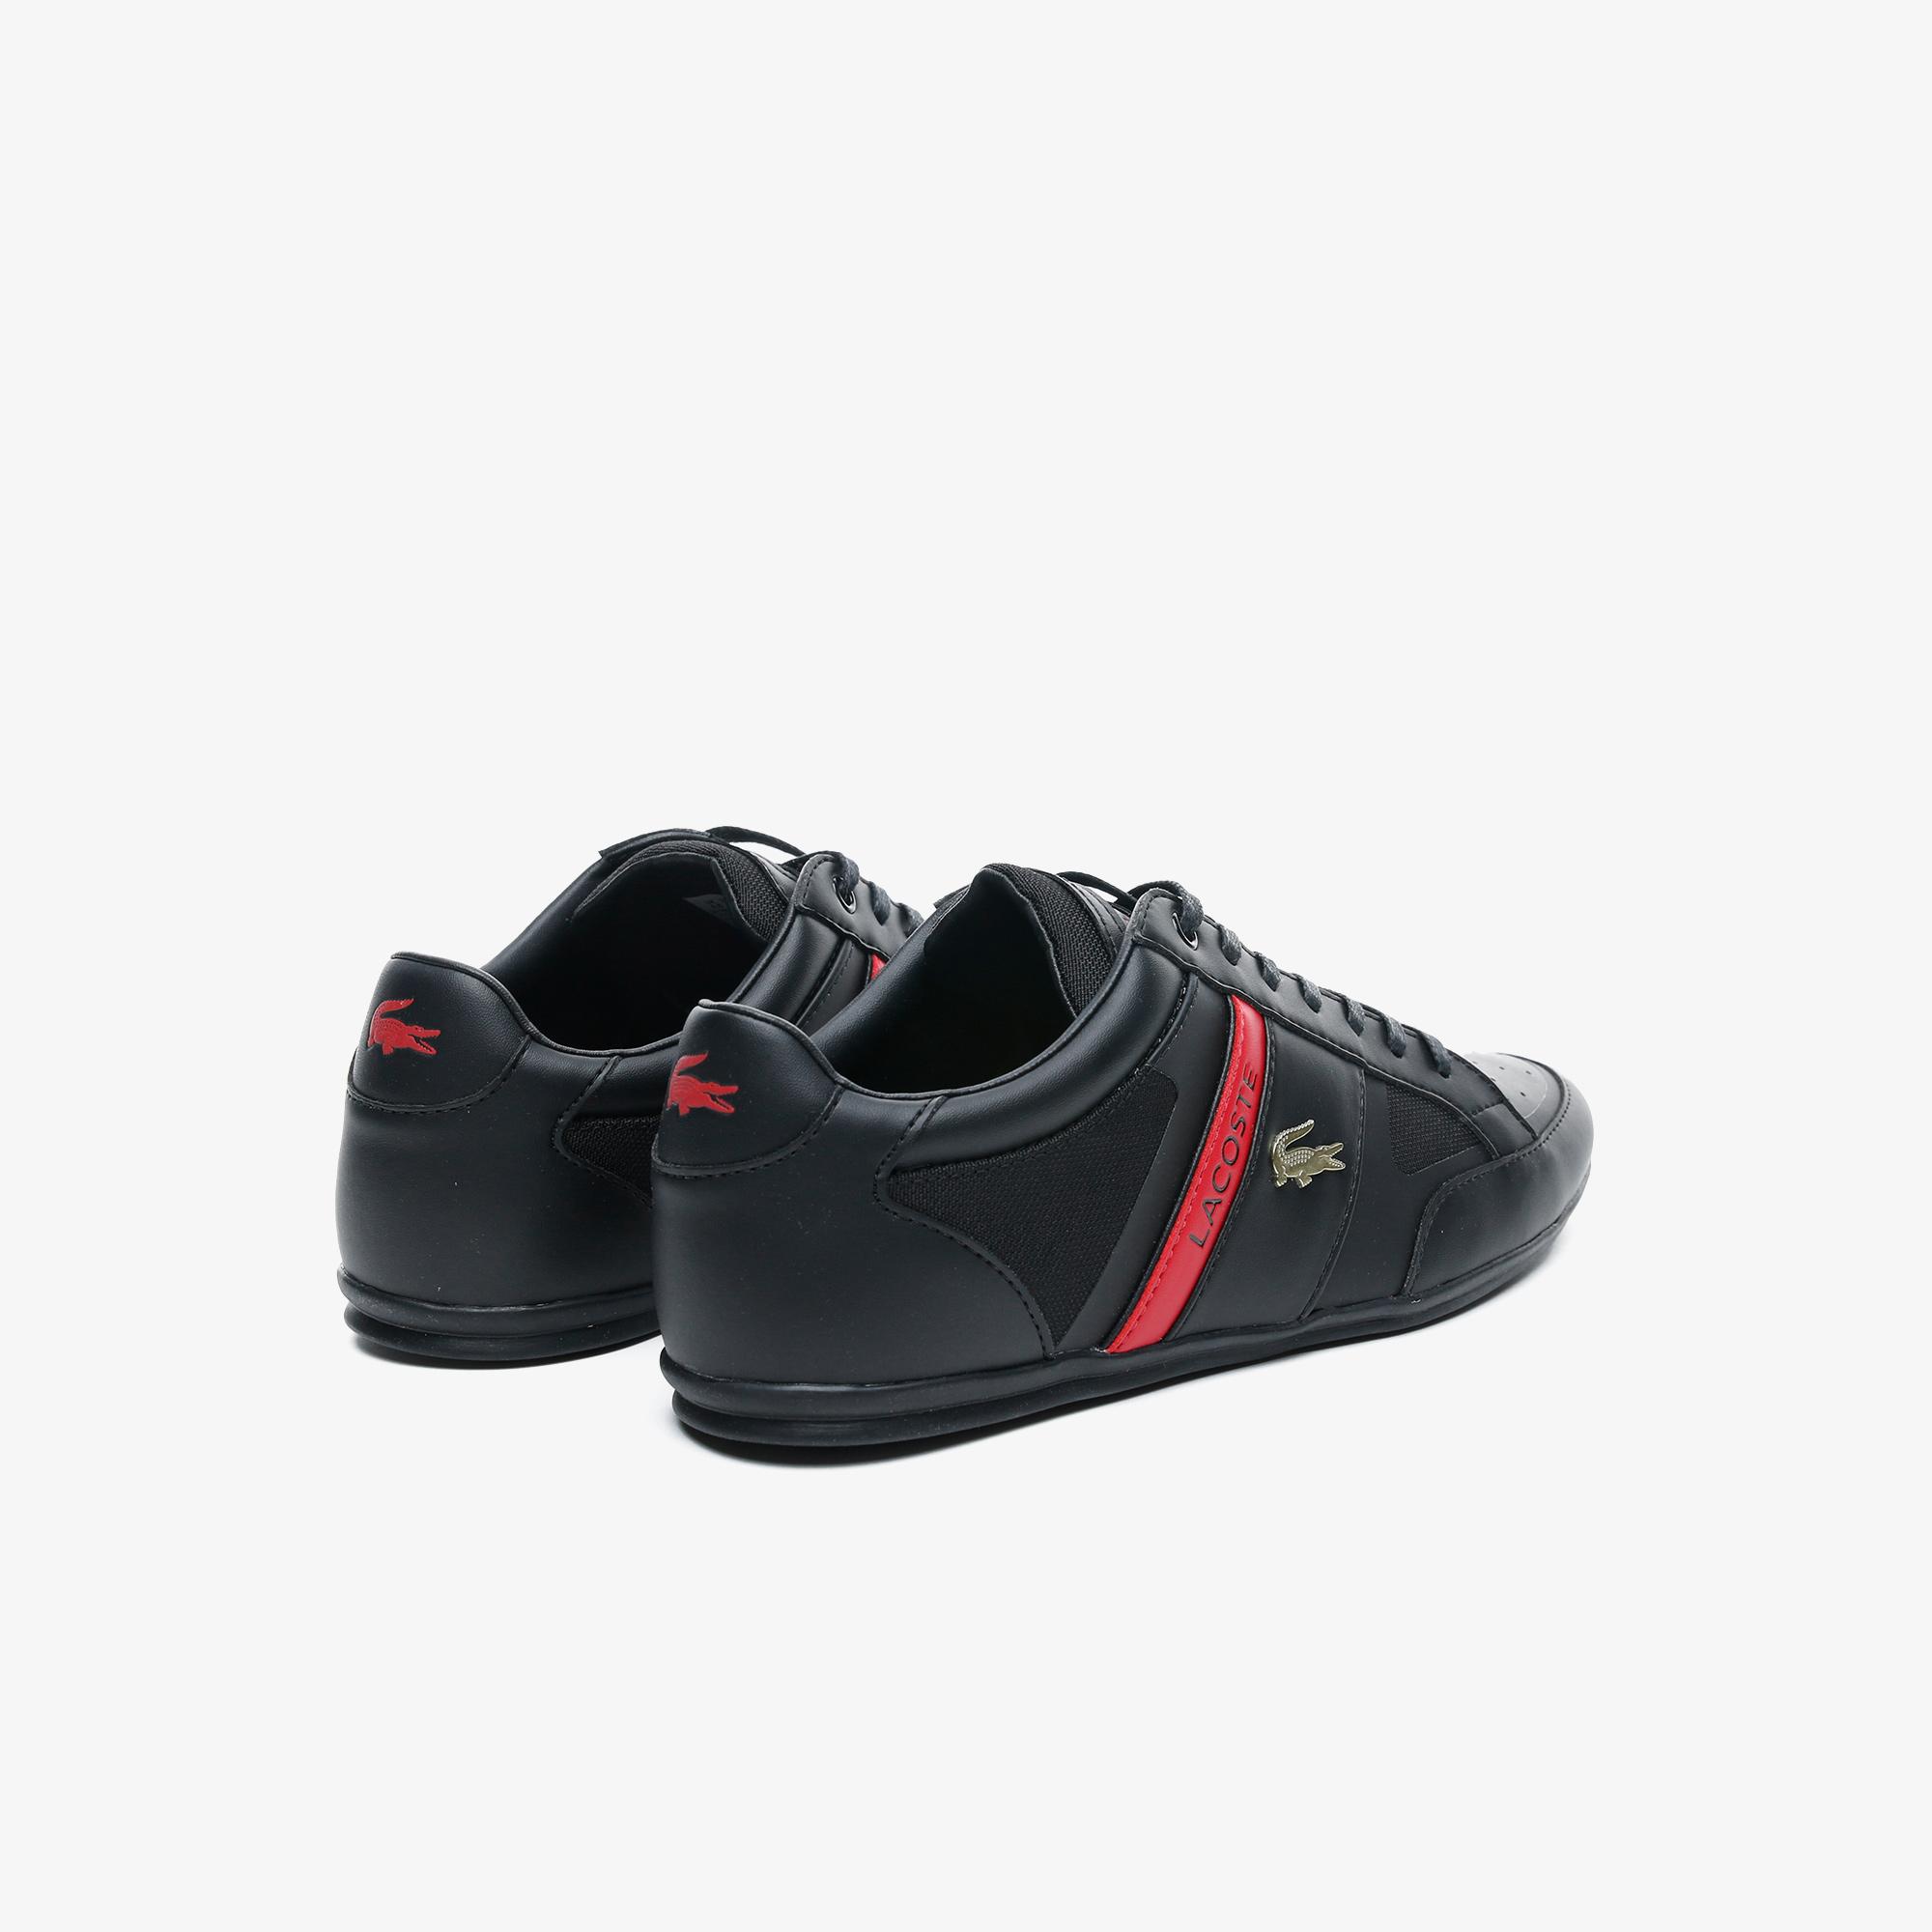 Lacoste Chaymon Tech 0120 3 Cma Erkek Siyah - Kırmızı Casual Ayakkabı. 5